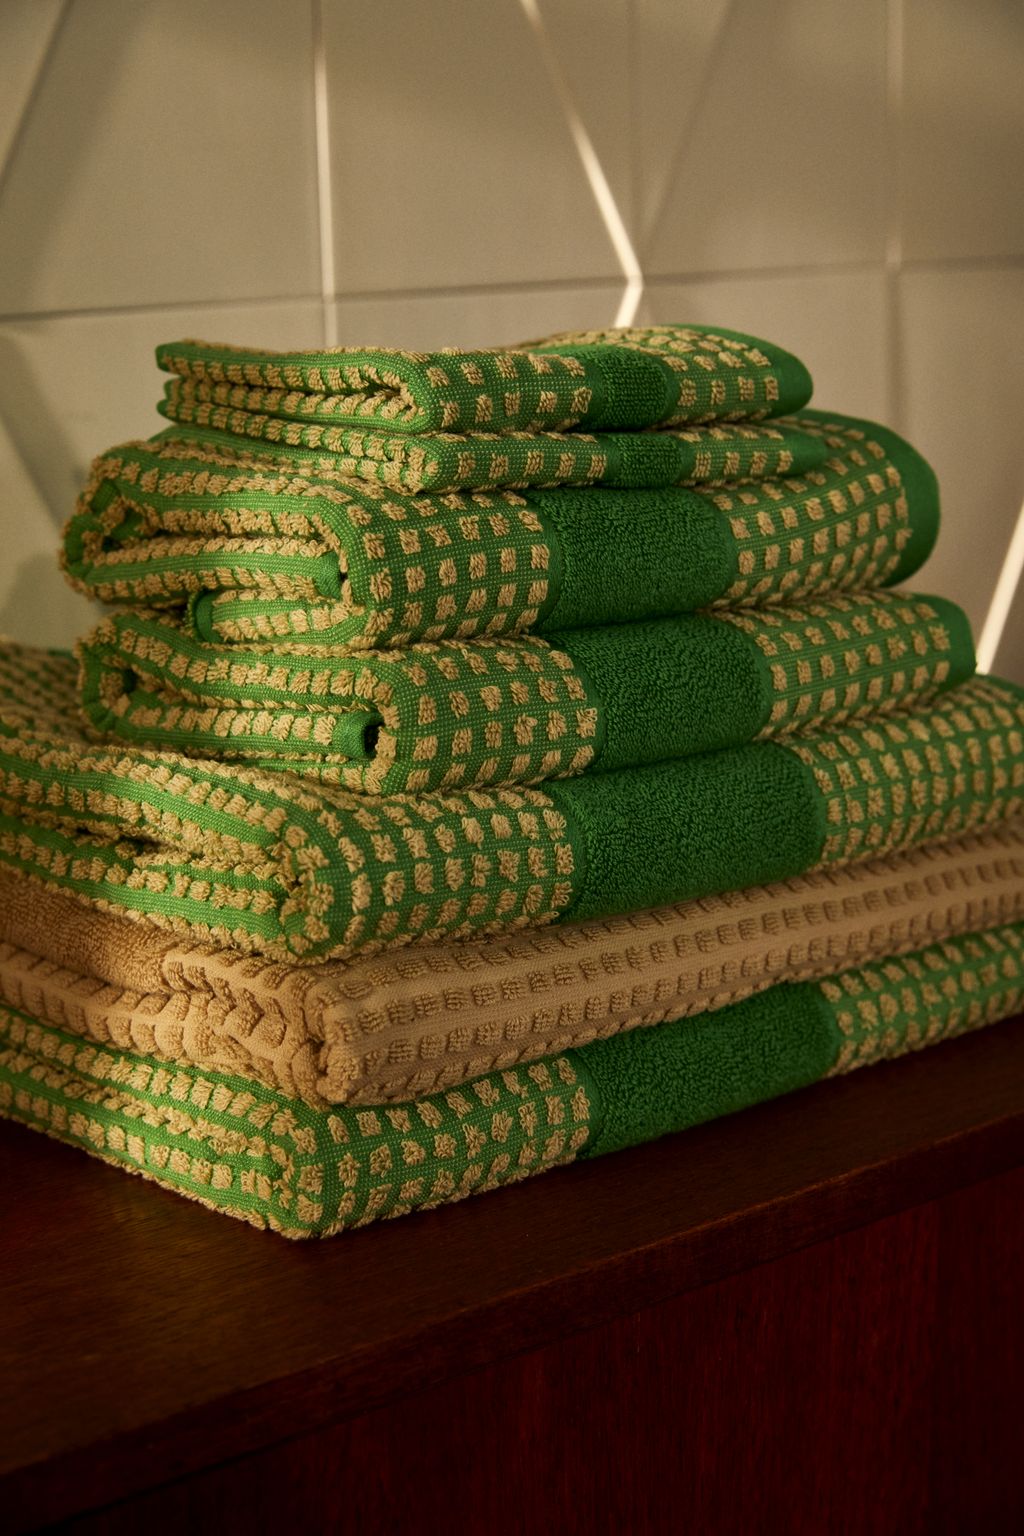 Juna Controleer handdoek 70 x140 cm, groen/beige